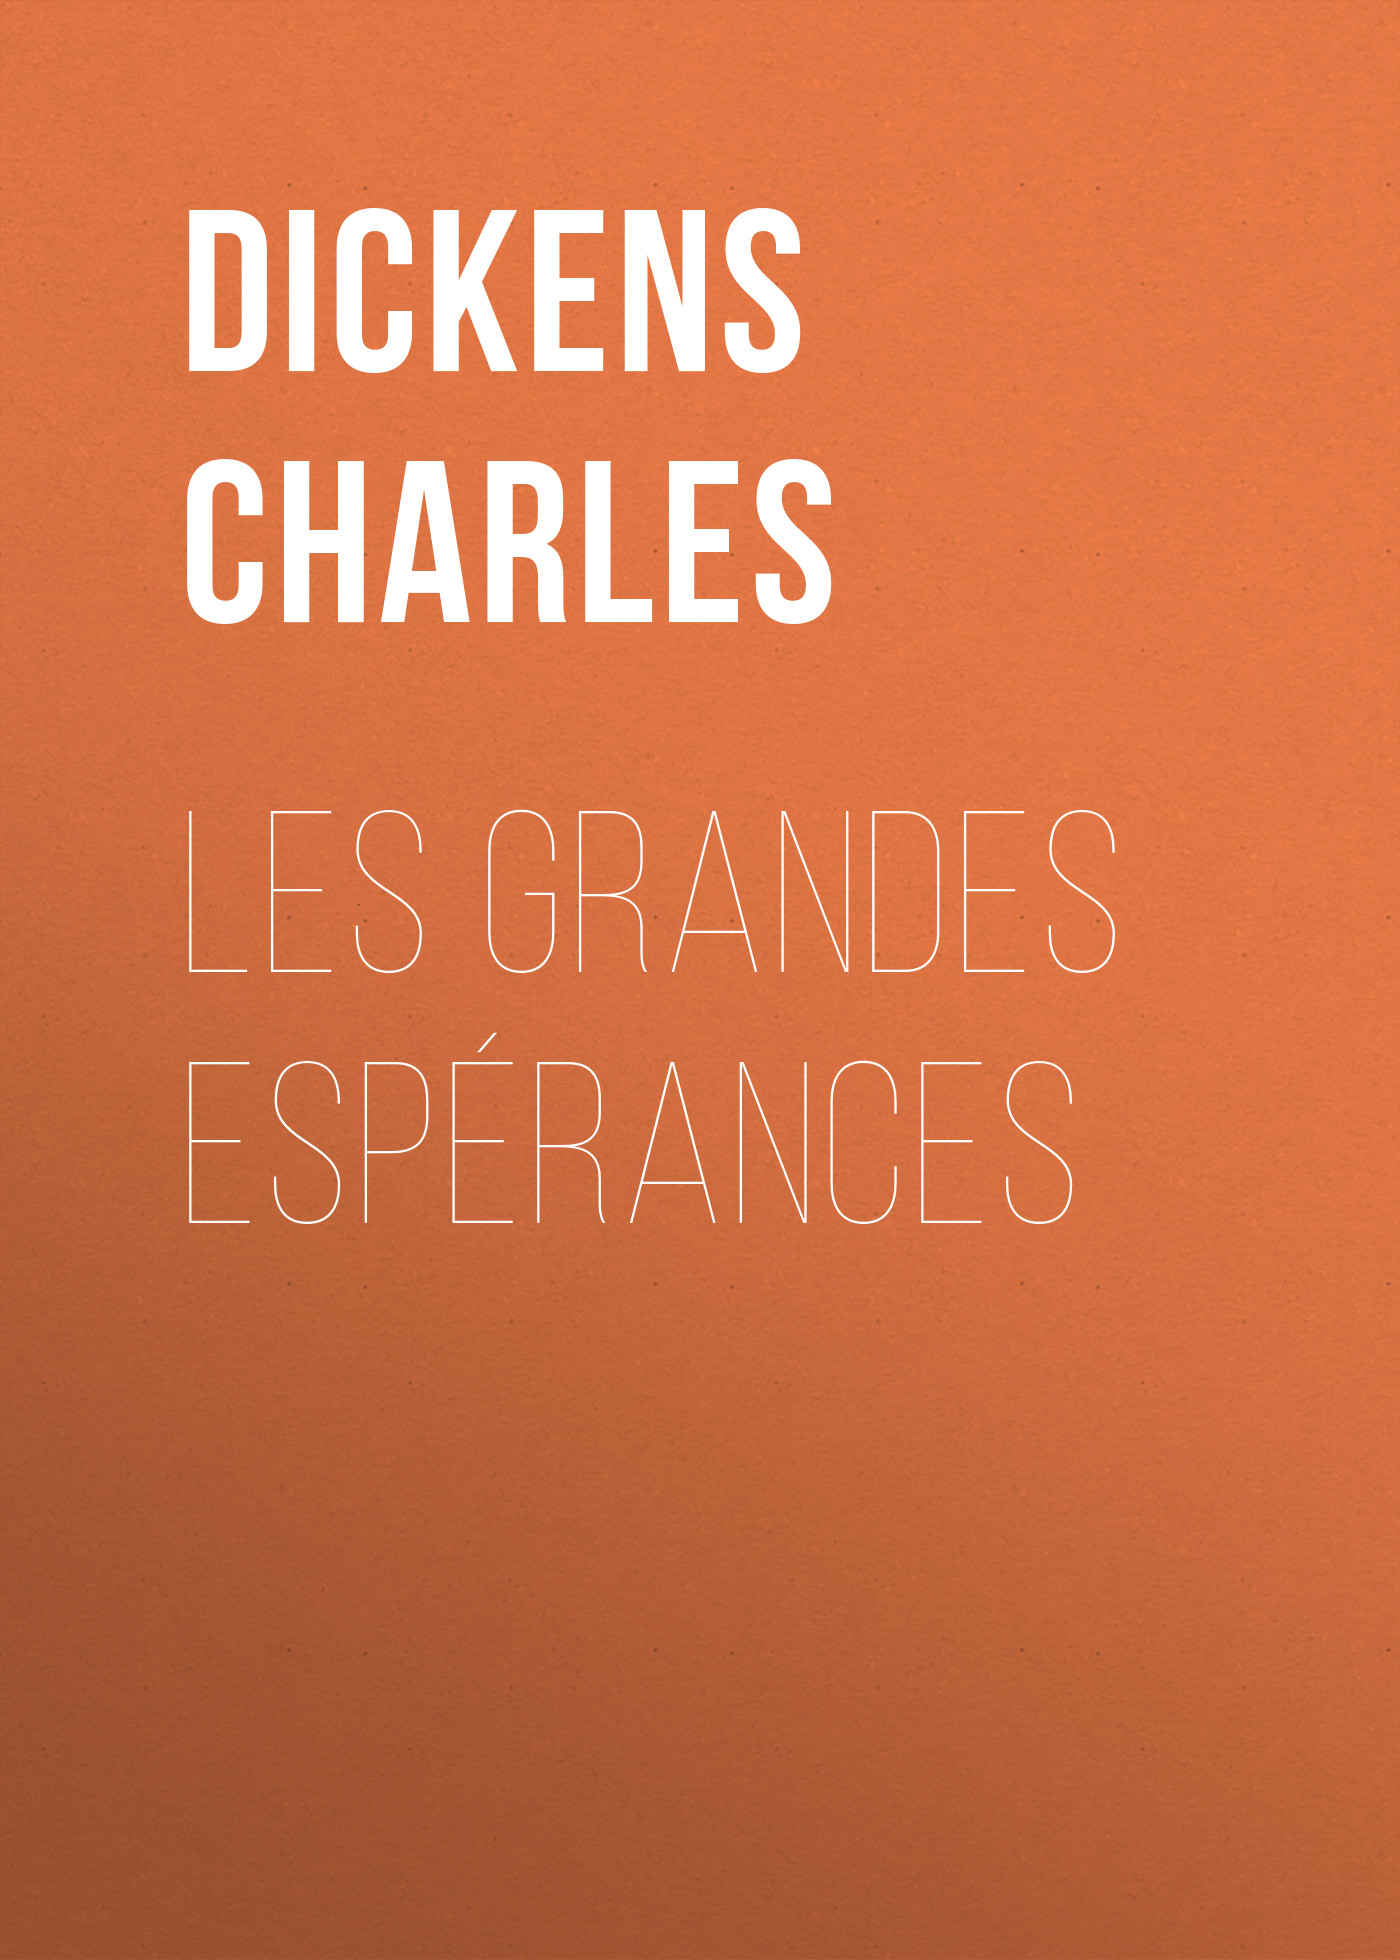 Книга Les grandes espérances из серии , созданная Charles Dickens, может относится к жанру Зарубежная старинная литература, Зарубежная классика. Стоимость электронной книги Les grandes espérances с идентификатором 25092492 составляет 0 руб.